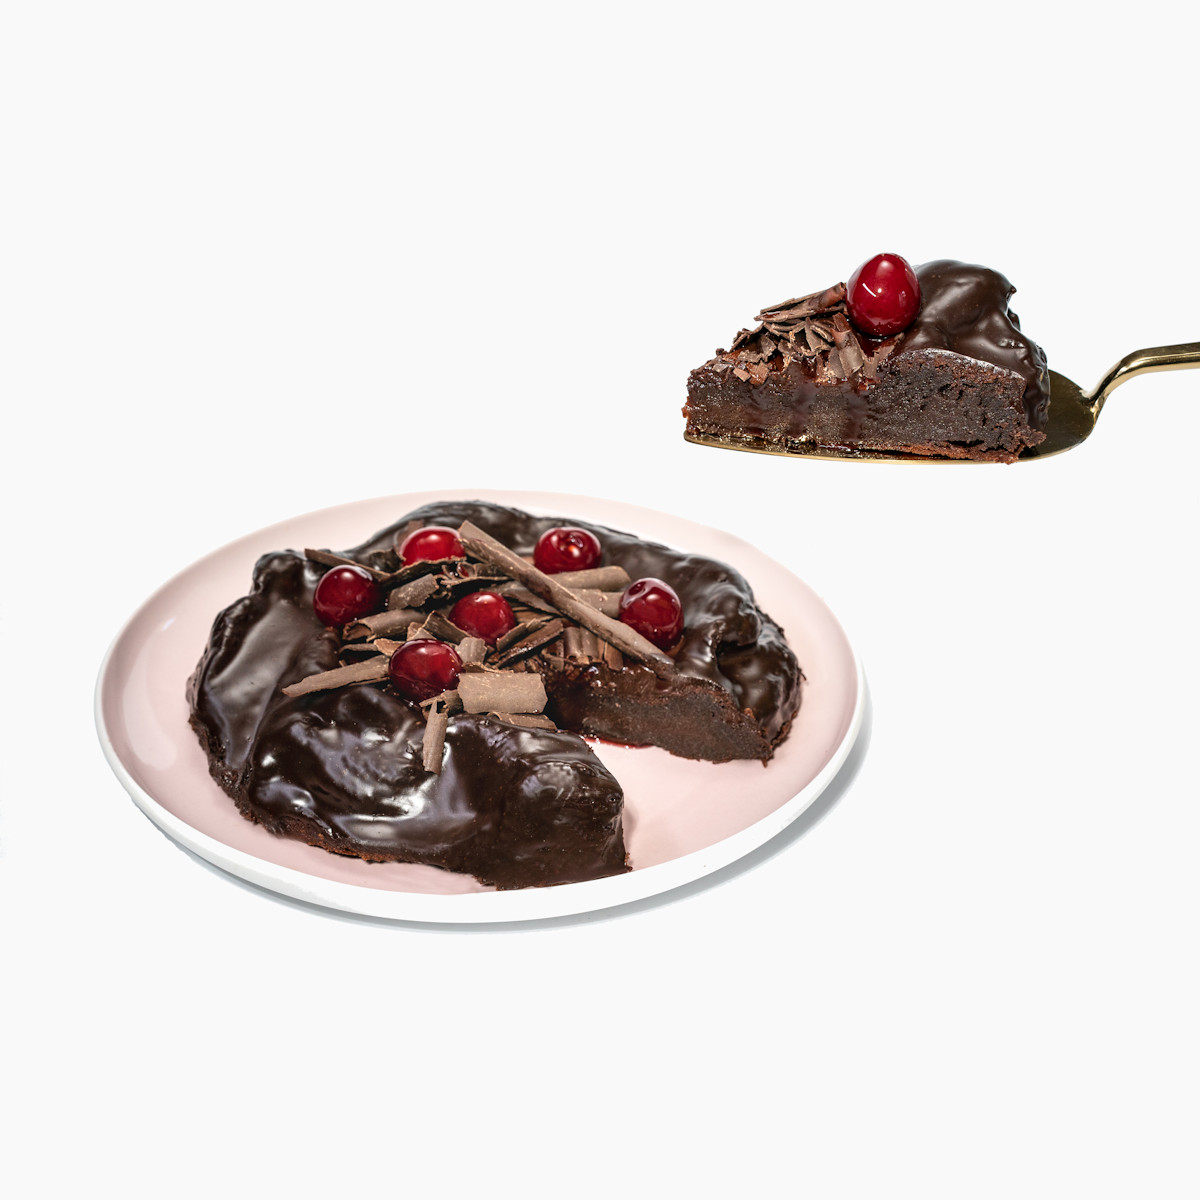 Kousek bezlepkového Čokodort Višeň s višněmi a čokoládovou ganache na lžíci, perfektní kombinace pro milovníky čokolády a ovoce